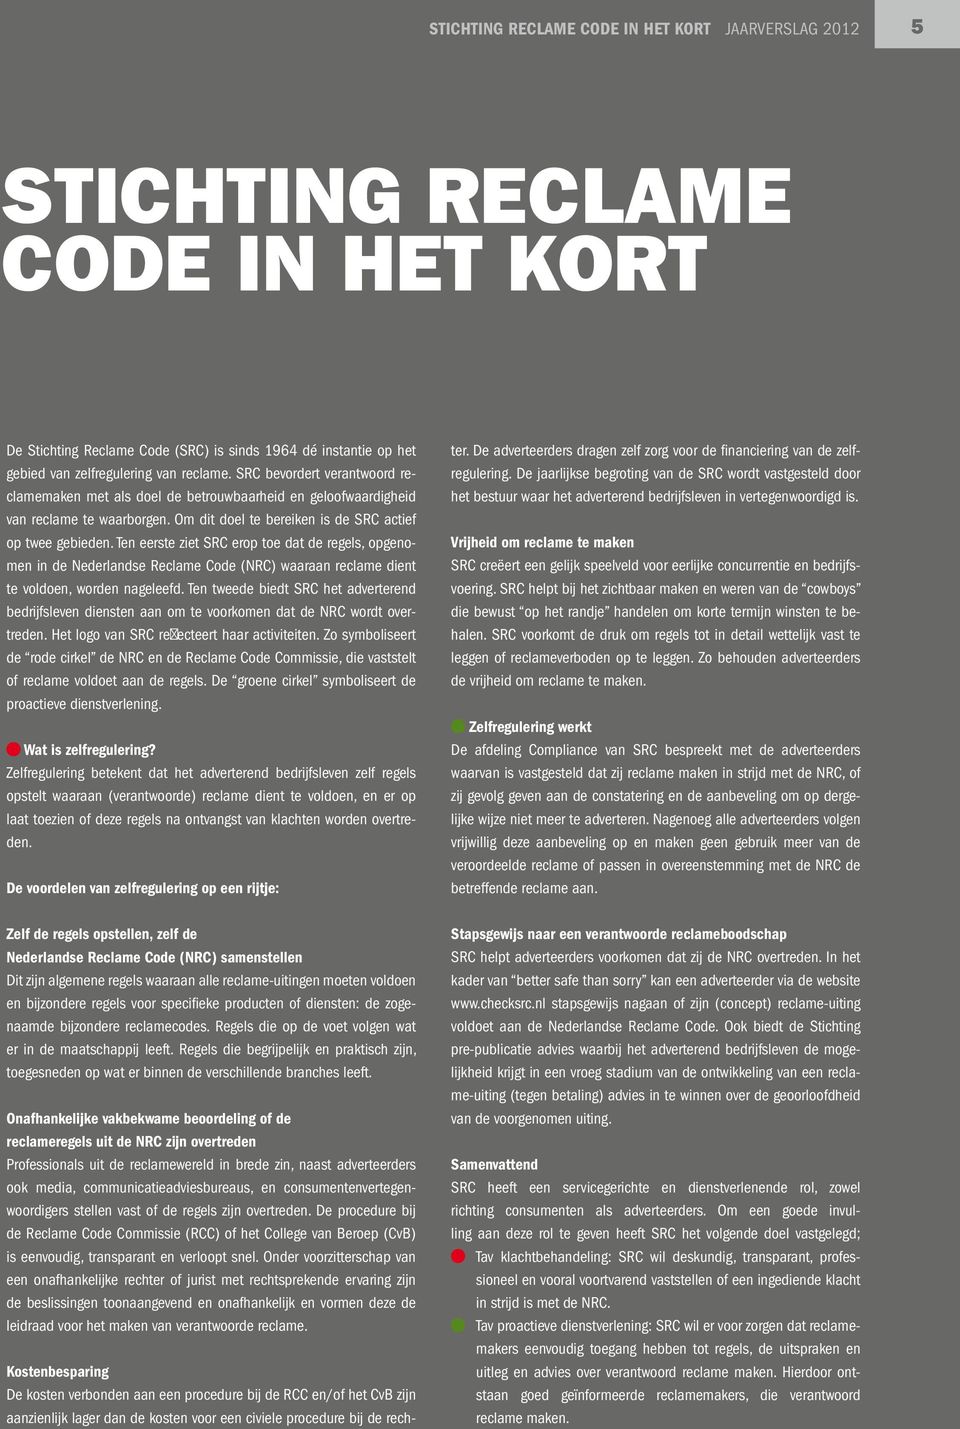 Ten eerste ziet SRC erop toe dat de regels, opgenomen in de Nederlandse Reclame Code (NRC) waaraan reclame dient te voldoen, worden nageleefd.